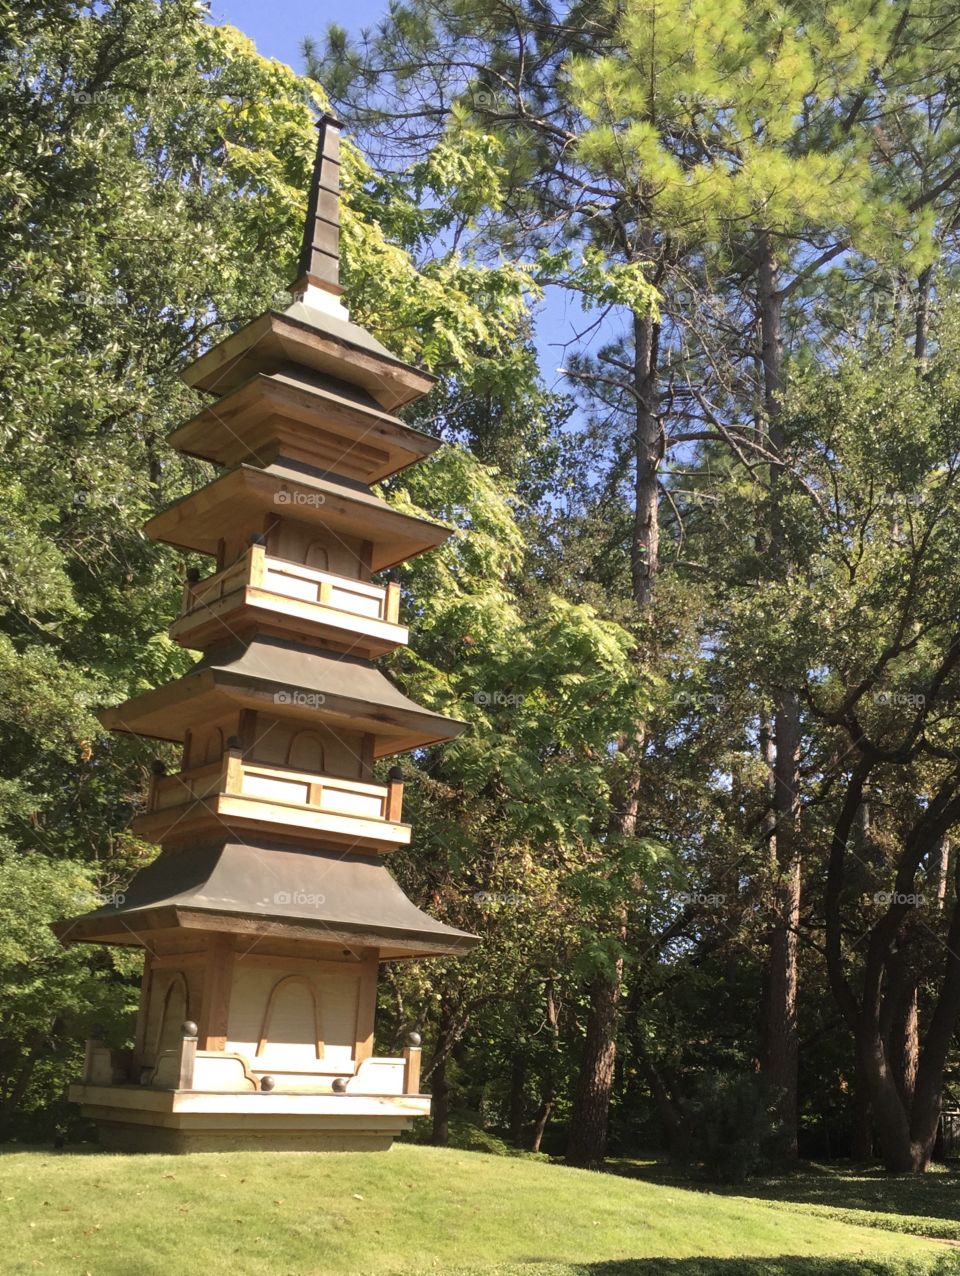 Pagoda
